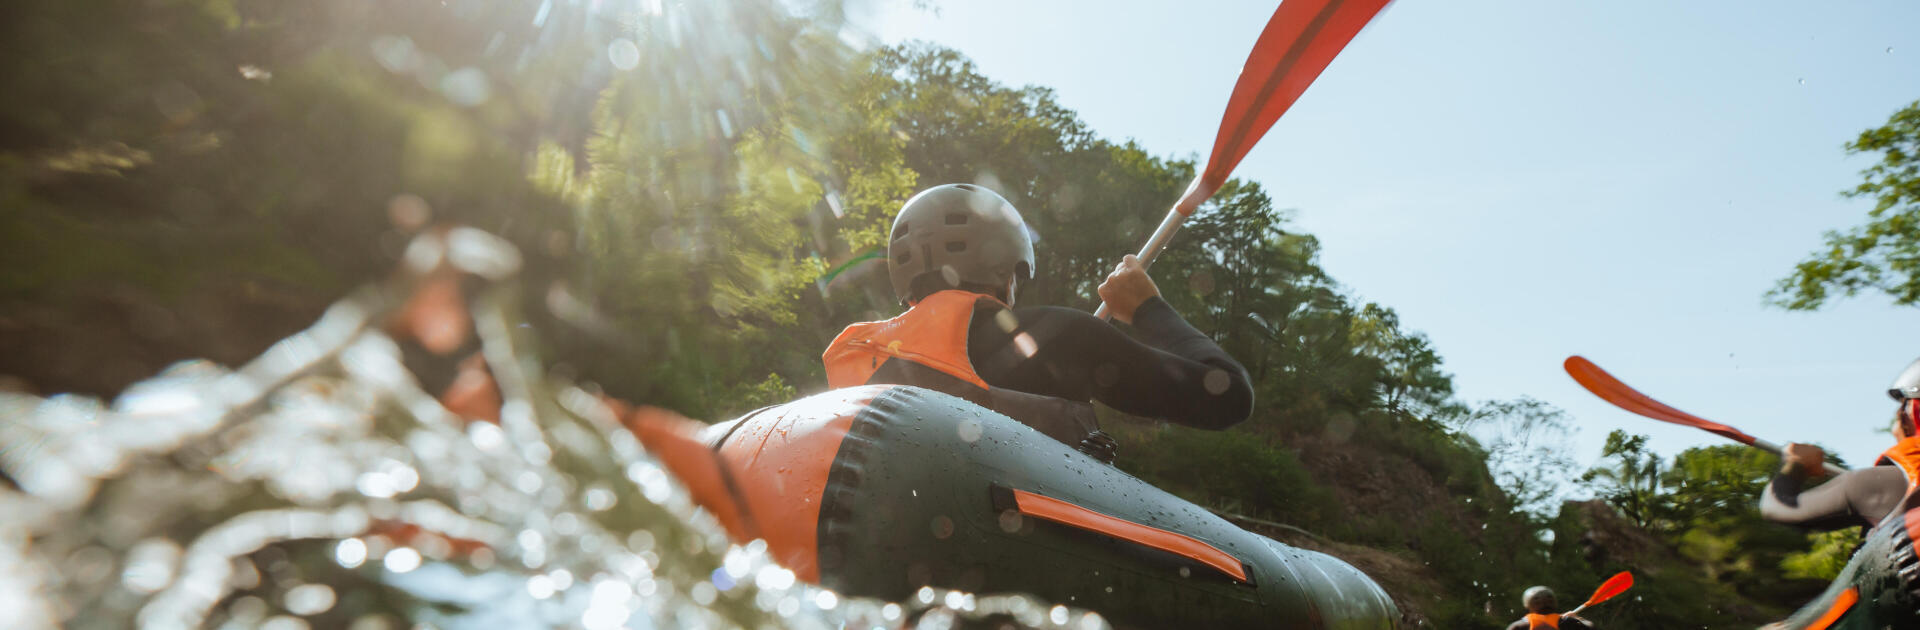 Réparer son canoë-kayak gonflable, c'est possible ?